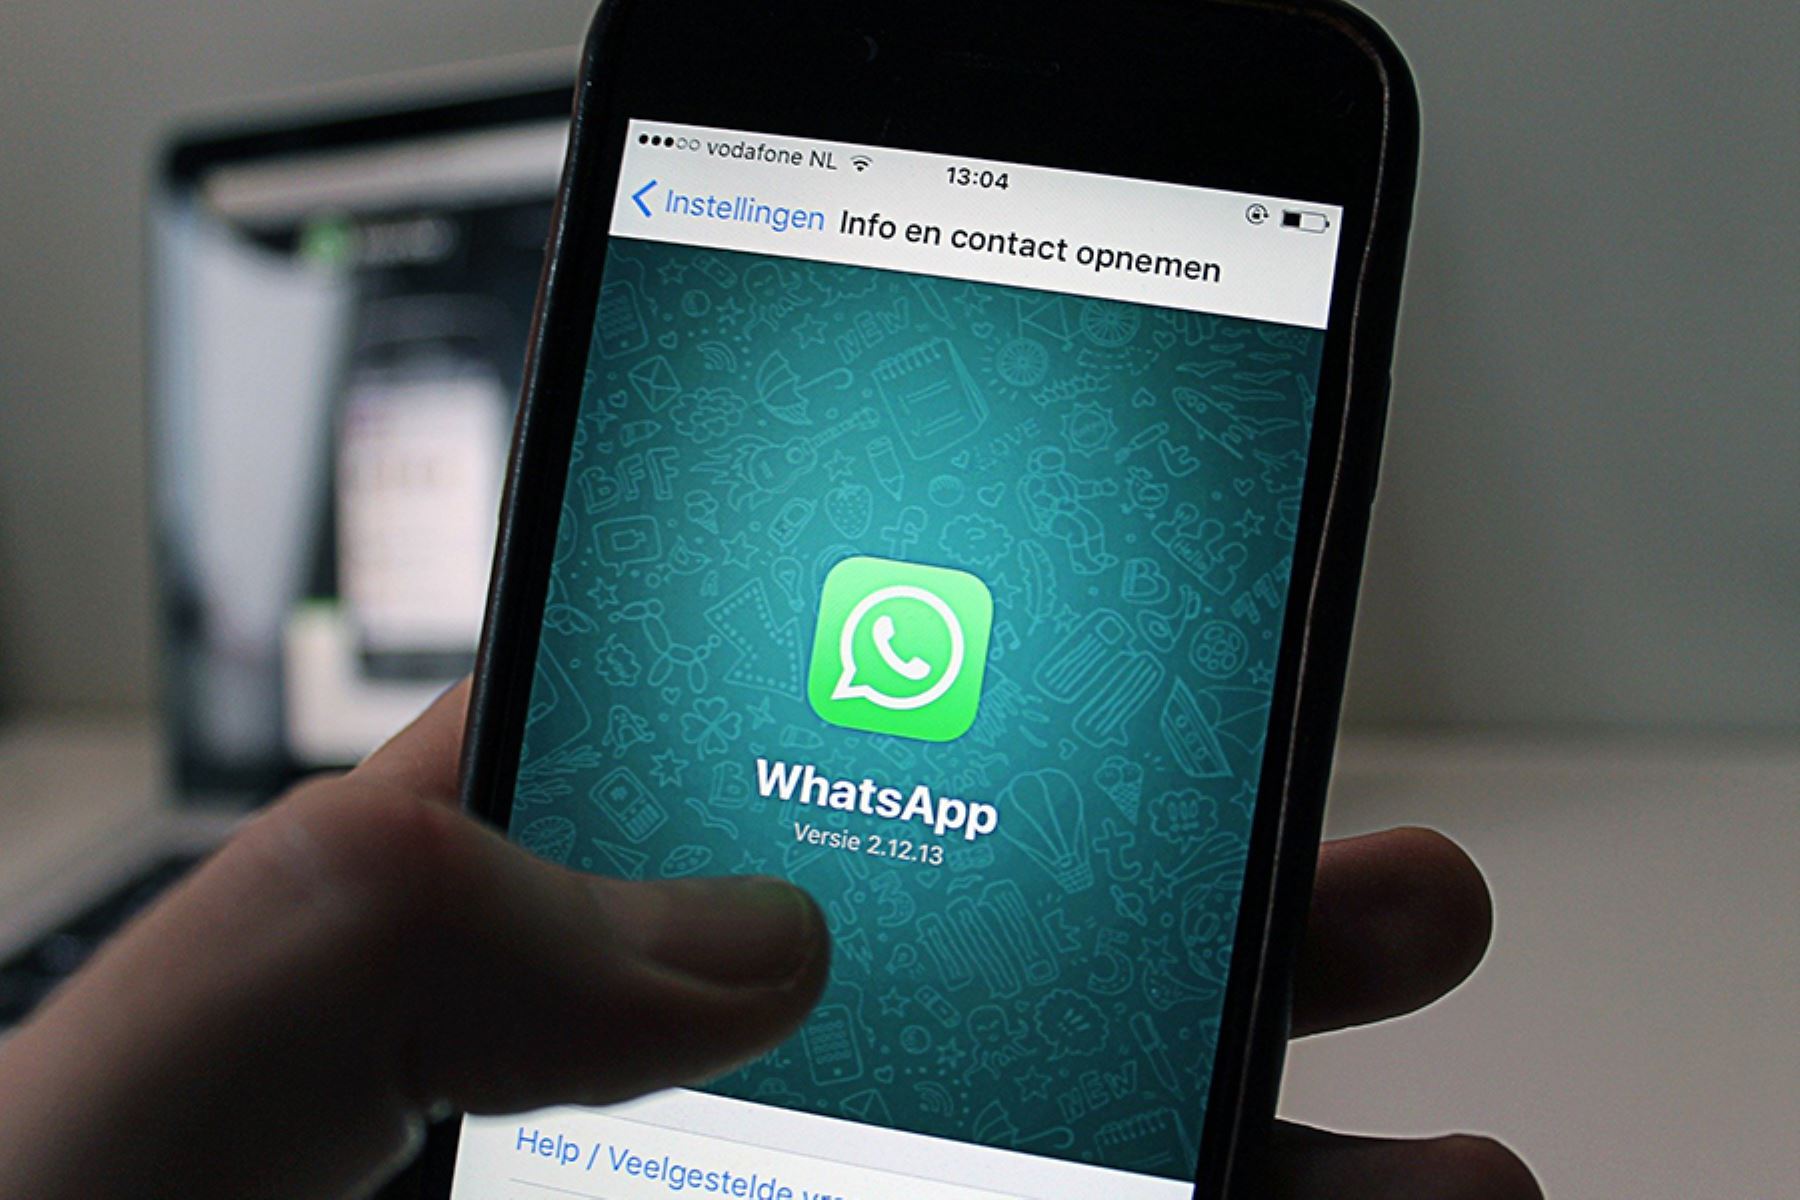 Usuarios no podían enviar mensajes, fotos ni acceder a WhatsApp web